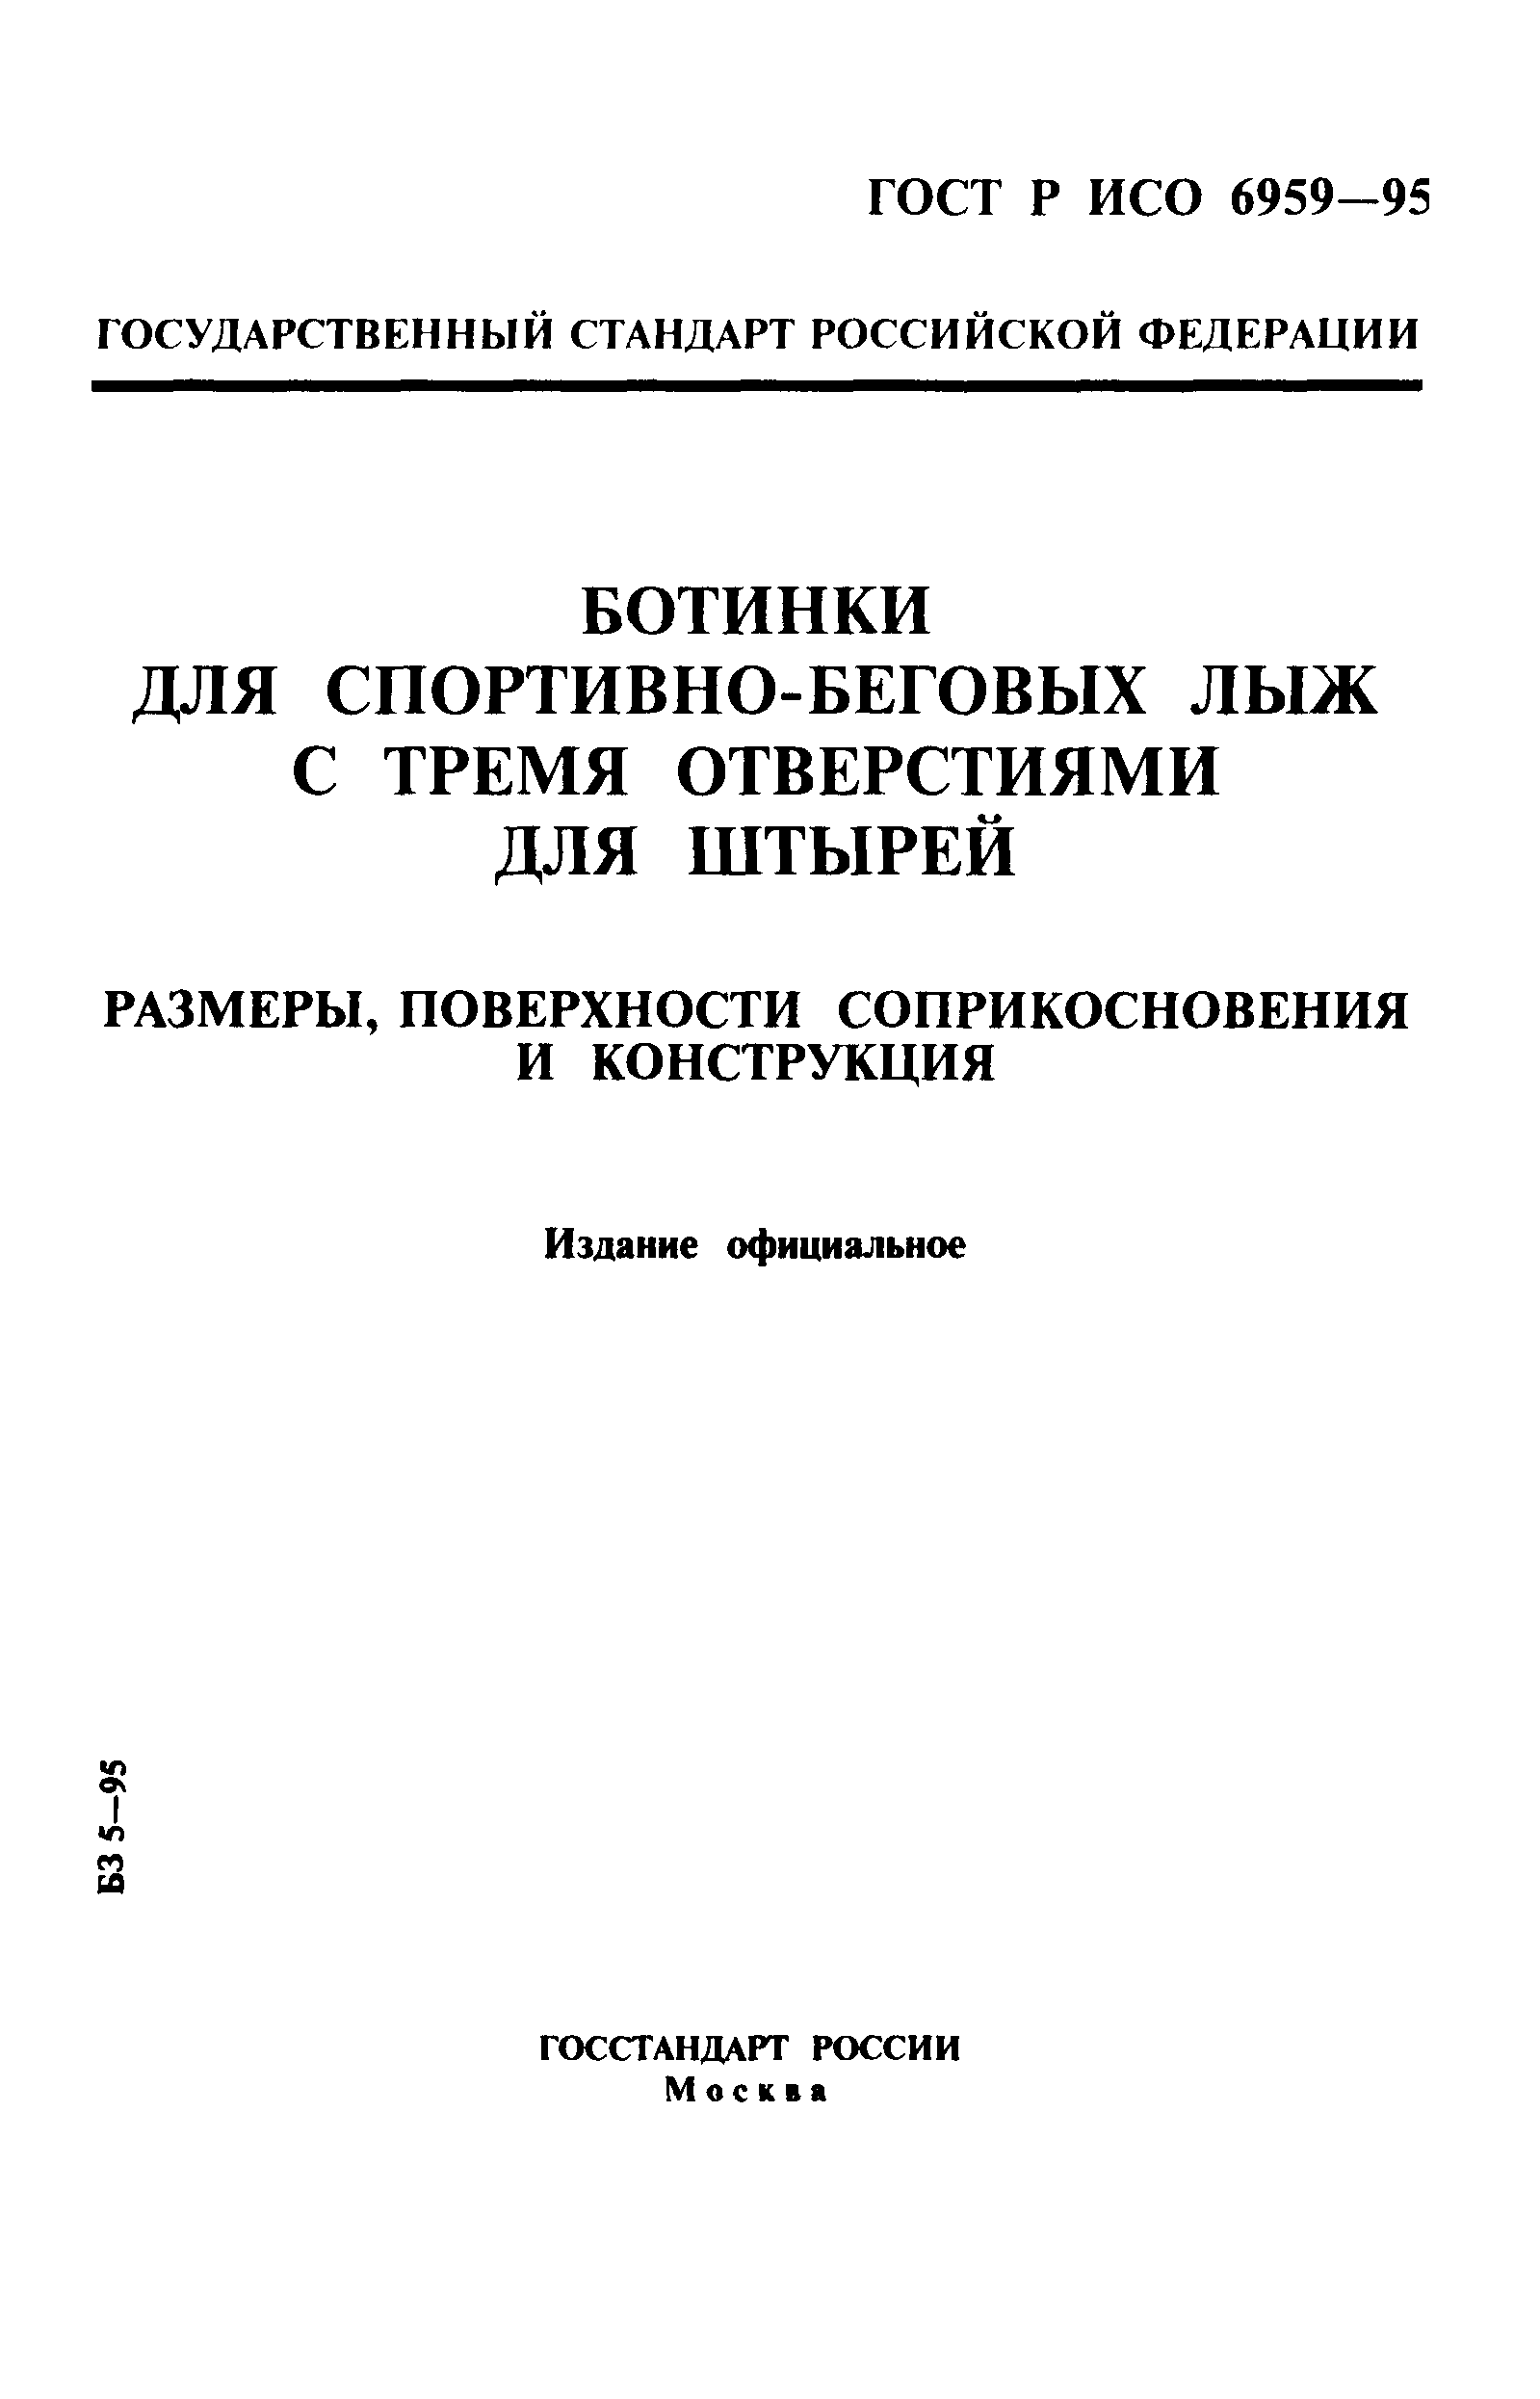 ГОСТ Р ИСО 6959-96